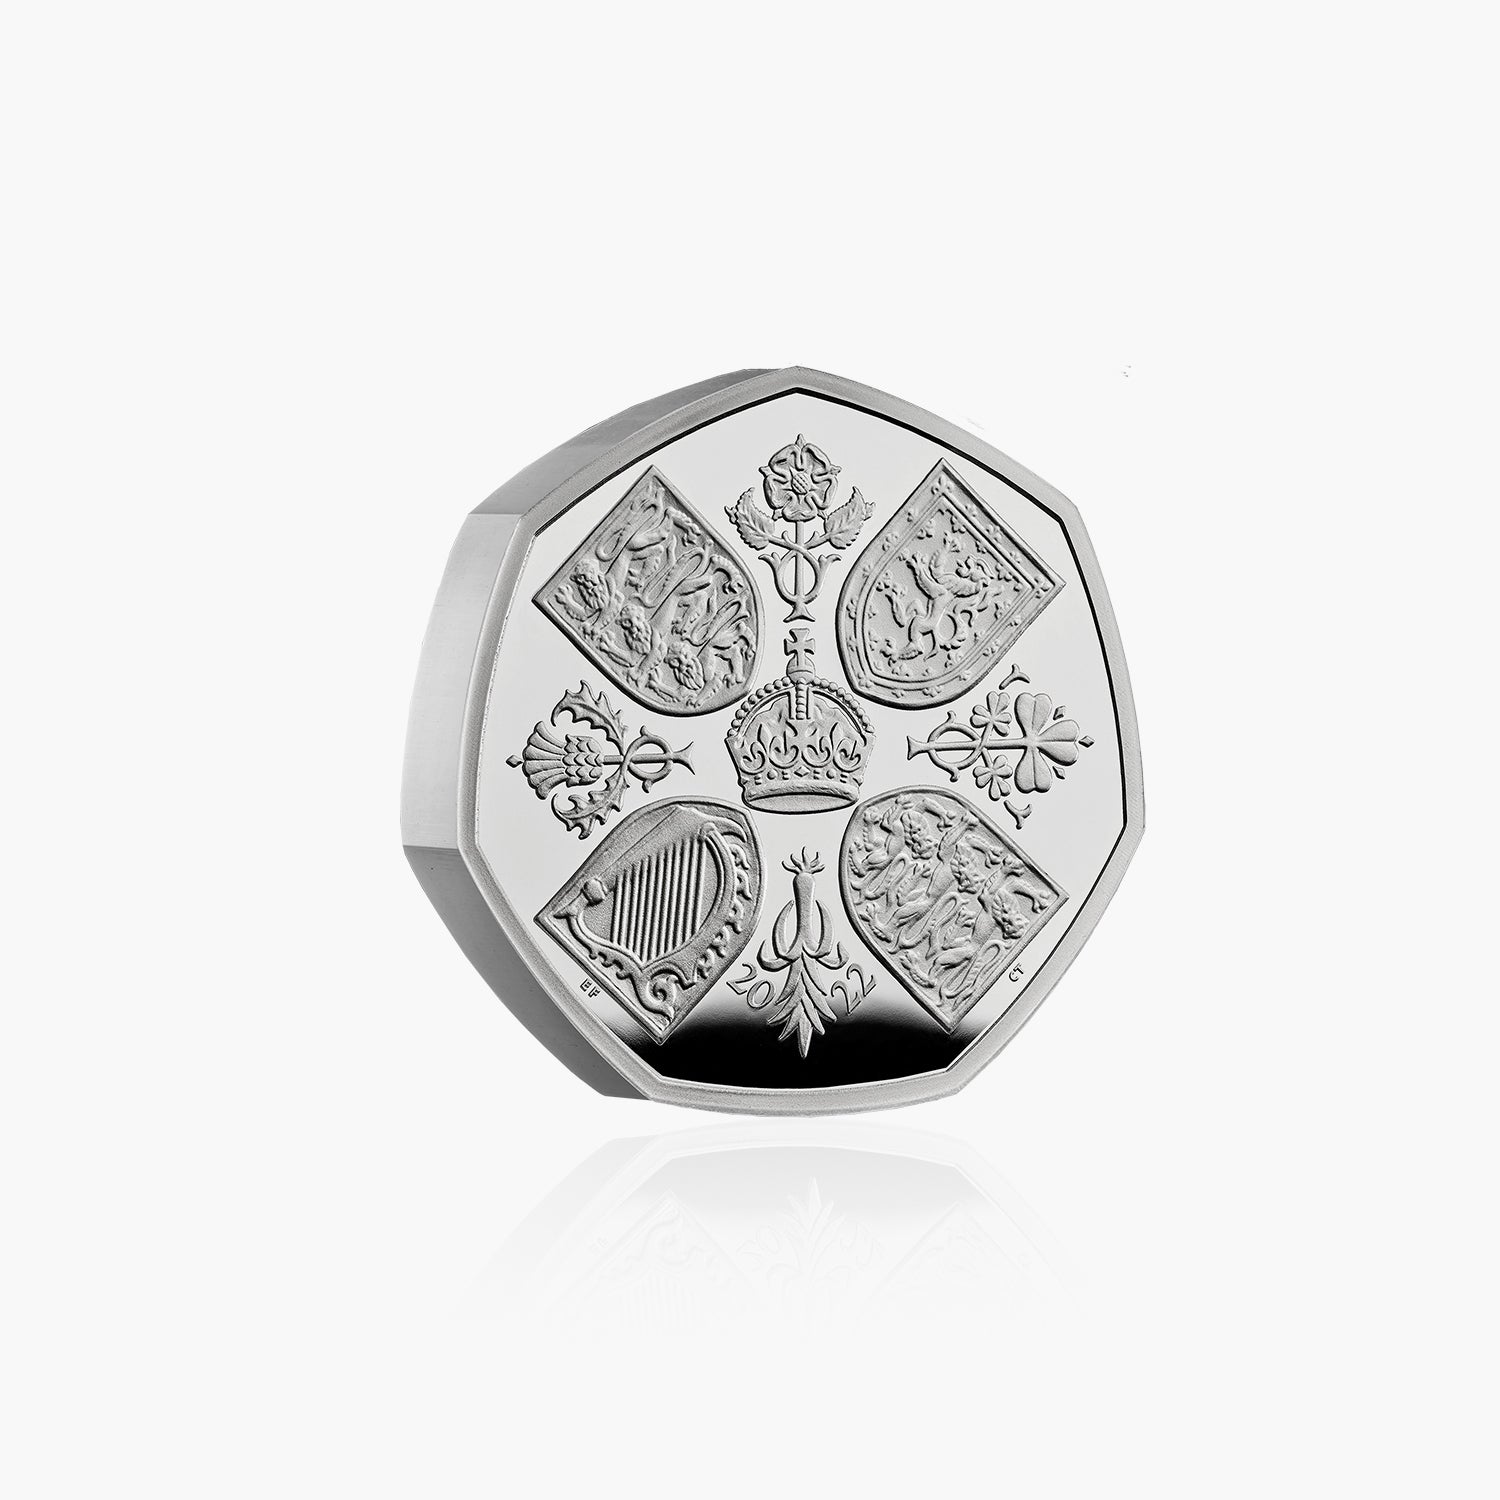 Sa Majesté la reine Elizabeth II 2022 50p Silver Piedfort Coin - Premier portrait du roi Charles III